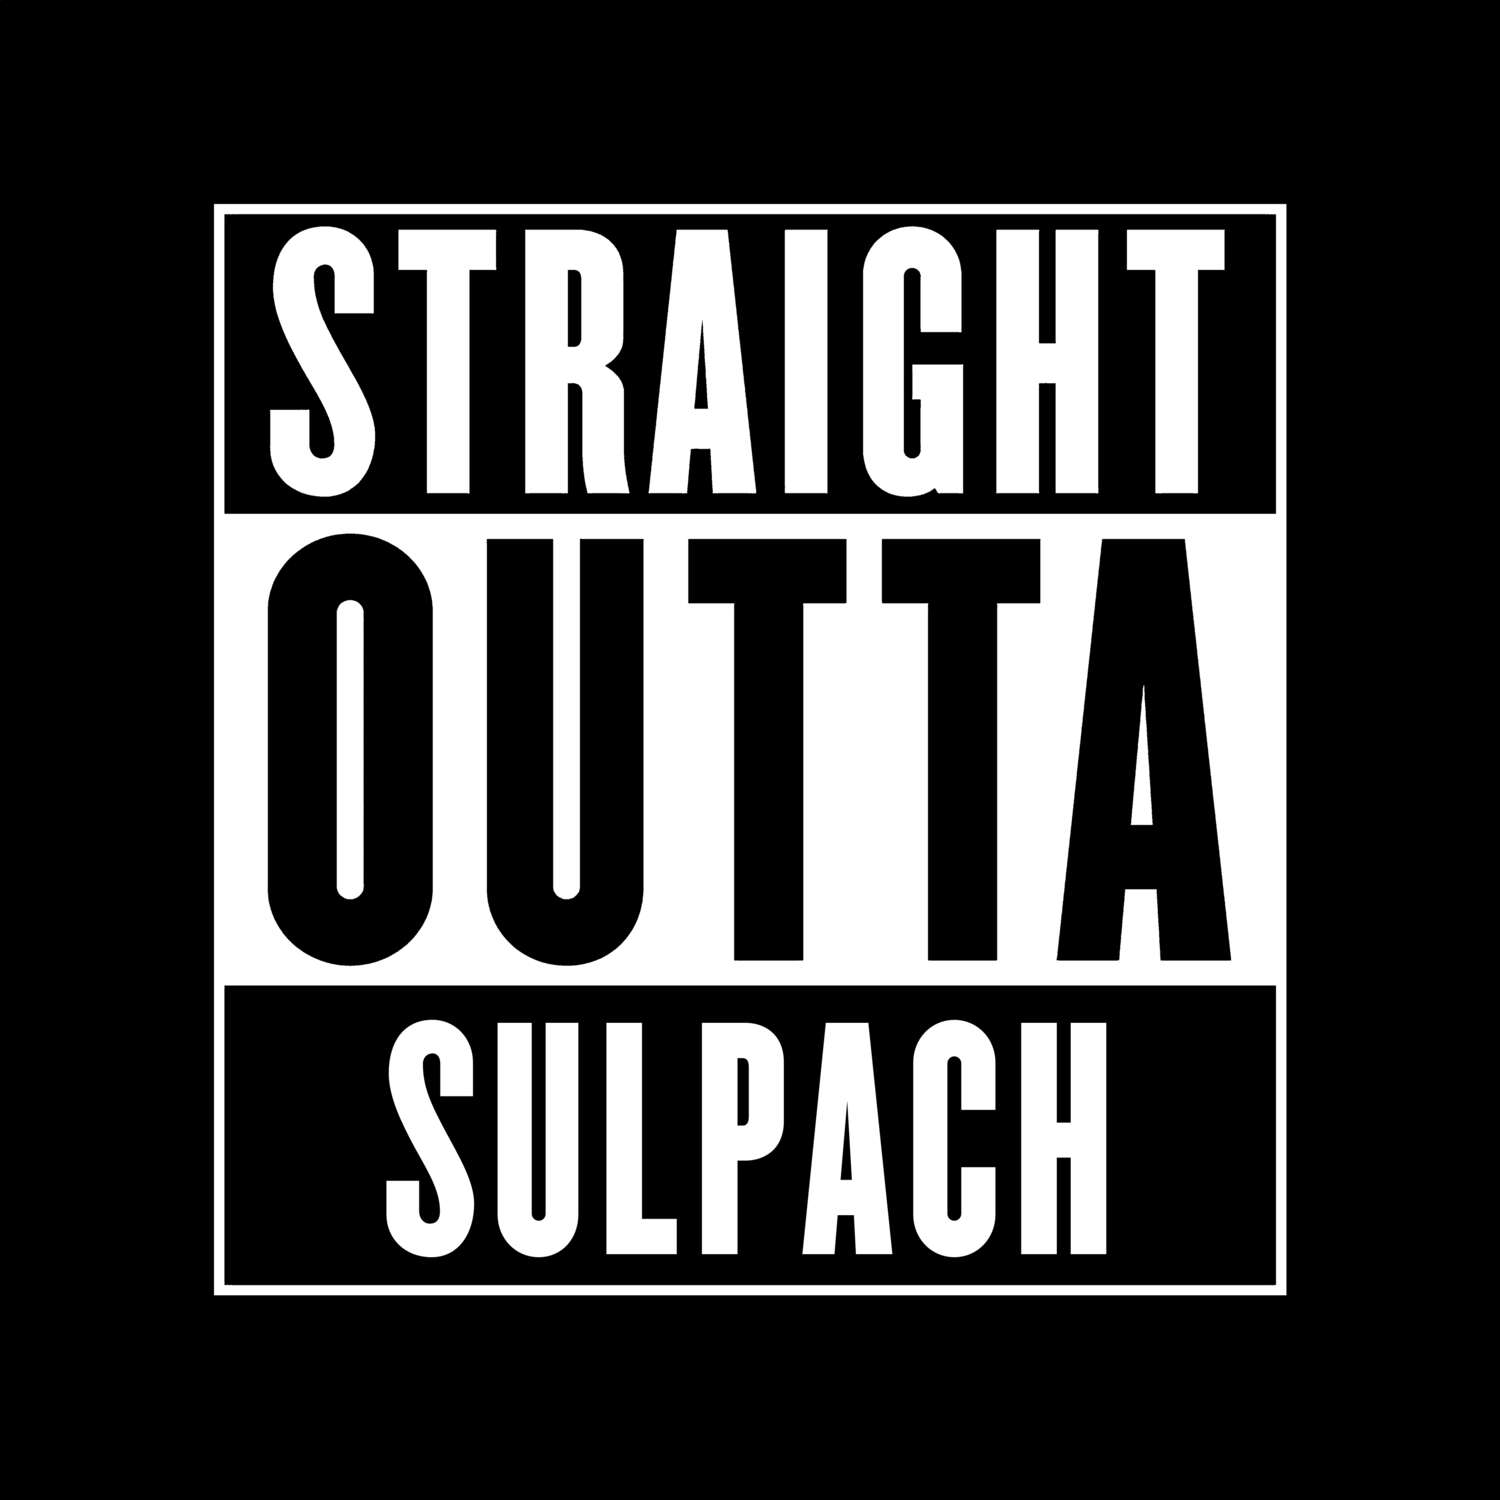 Sulpach T-Shirt »Straight Outta«